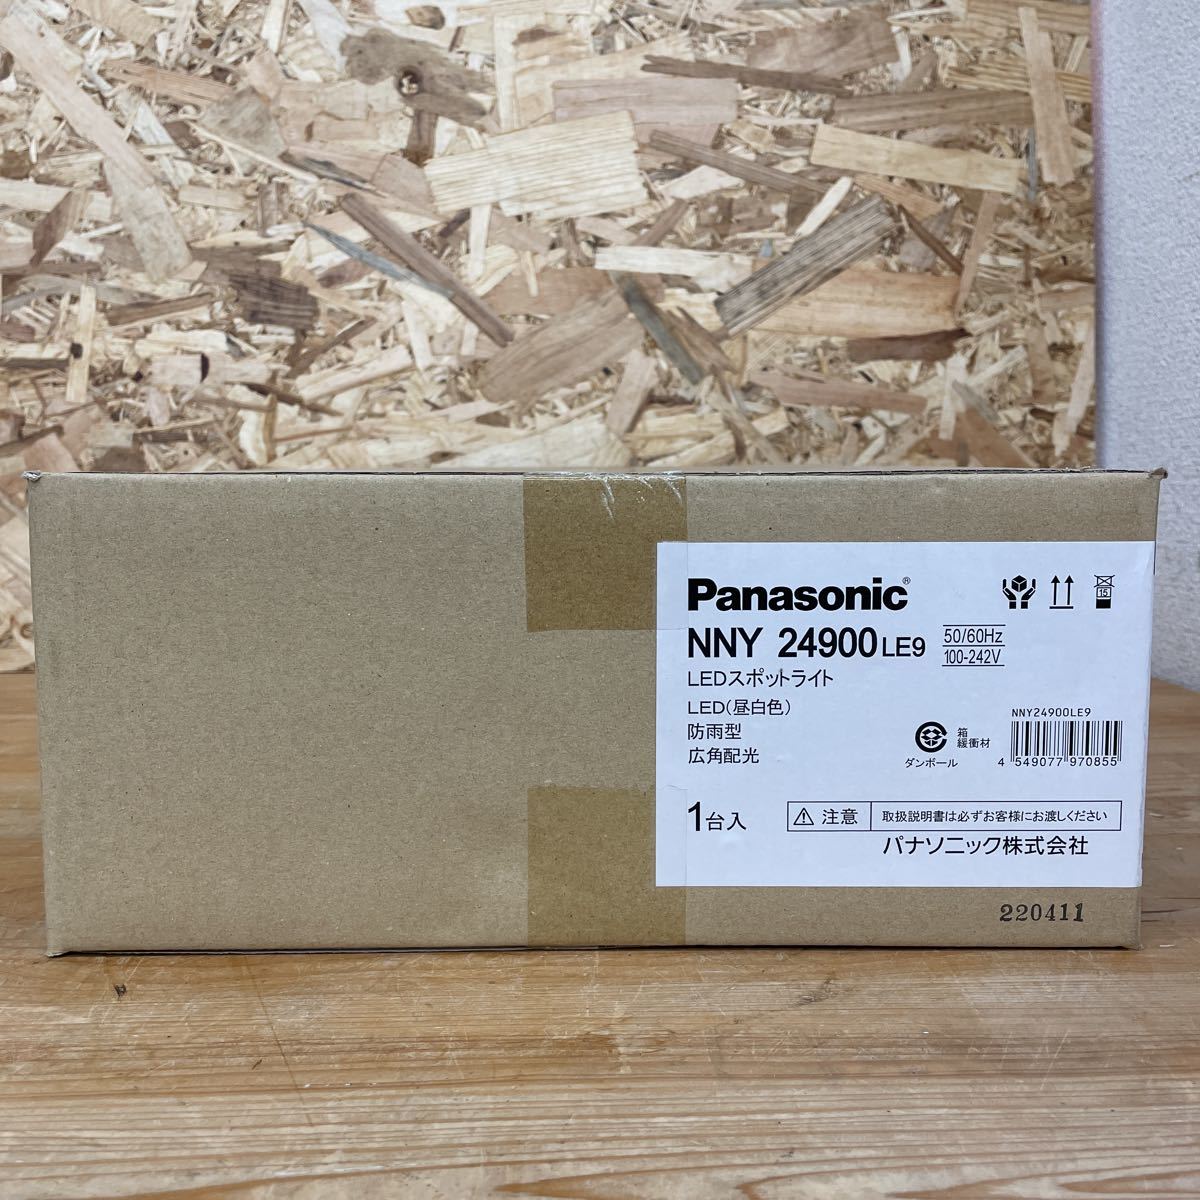 管-187742 【未使用品】Panasonic NNY 24900LE9 LEDスポットライト 防雨型 広角タイプ配光_画像1